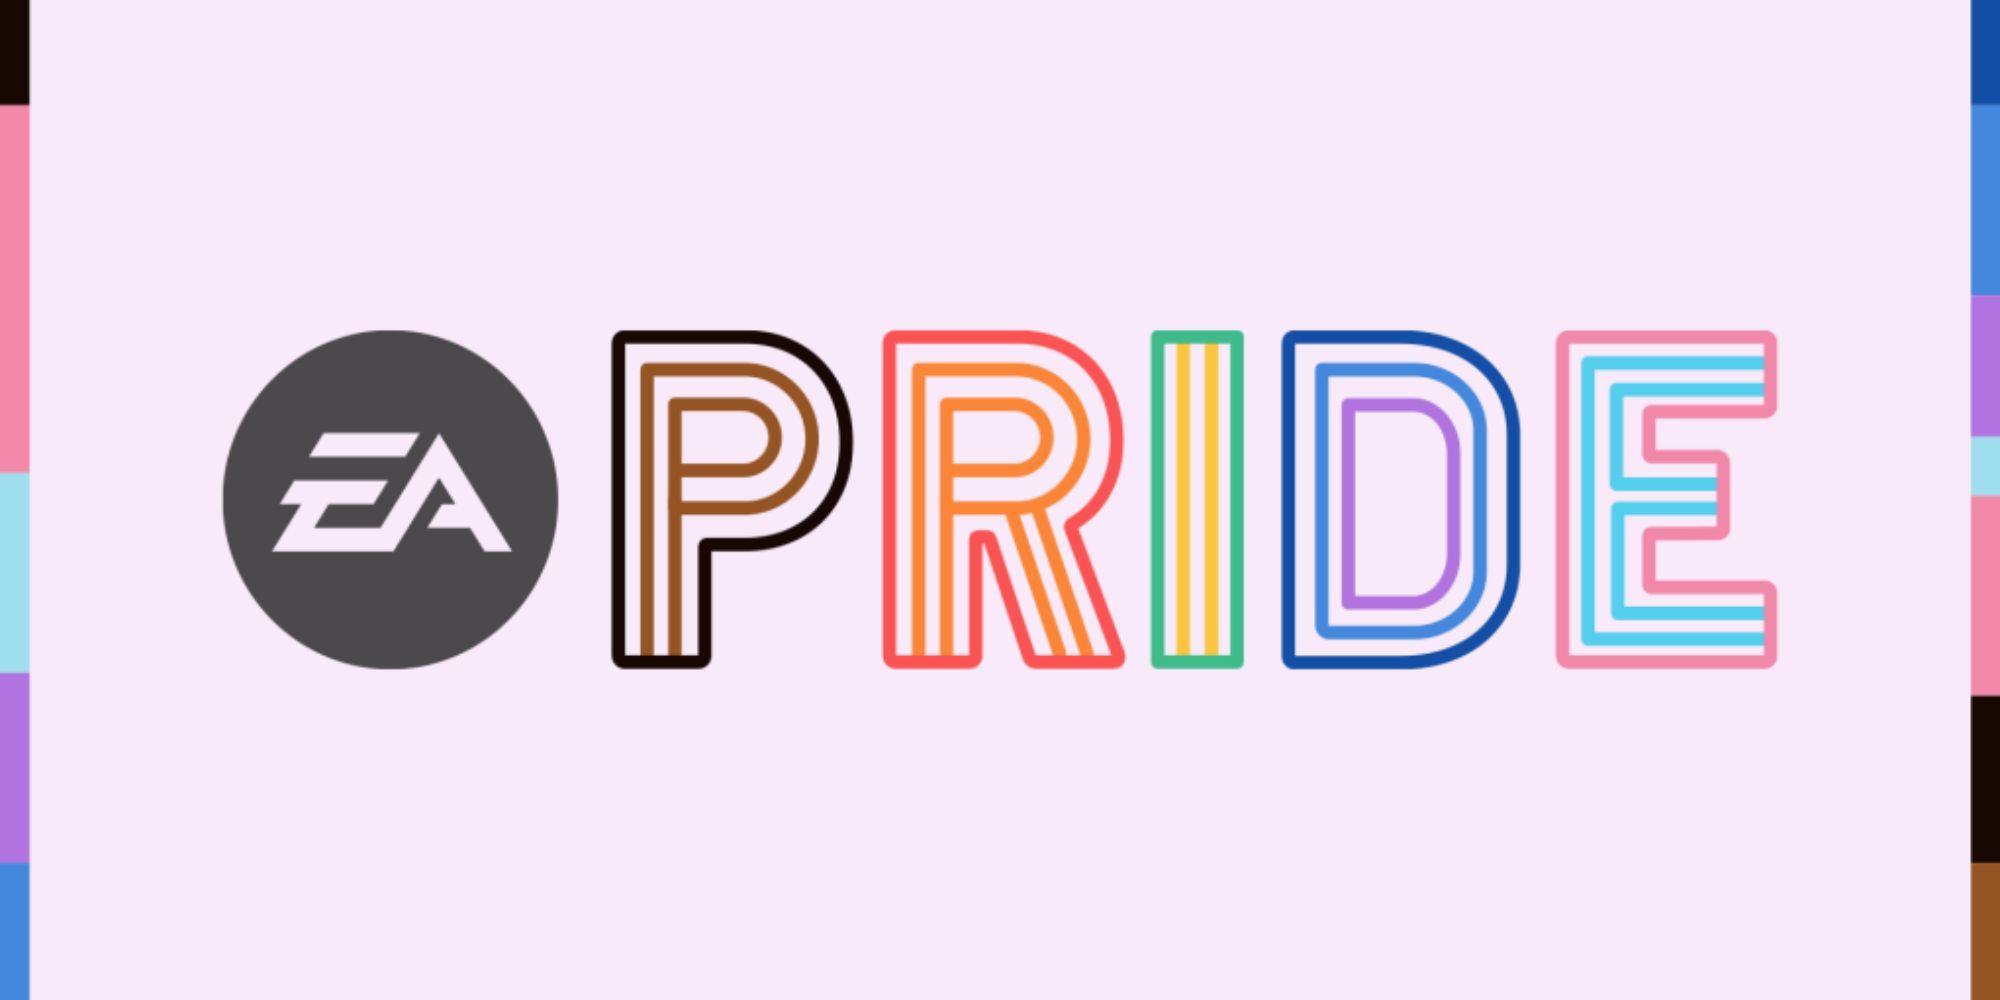 ea-pride-logo